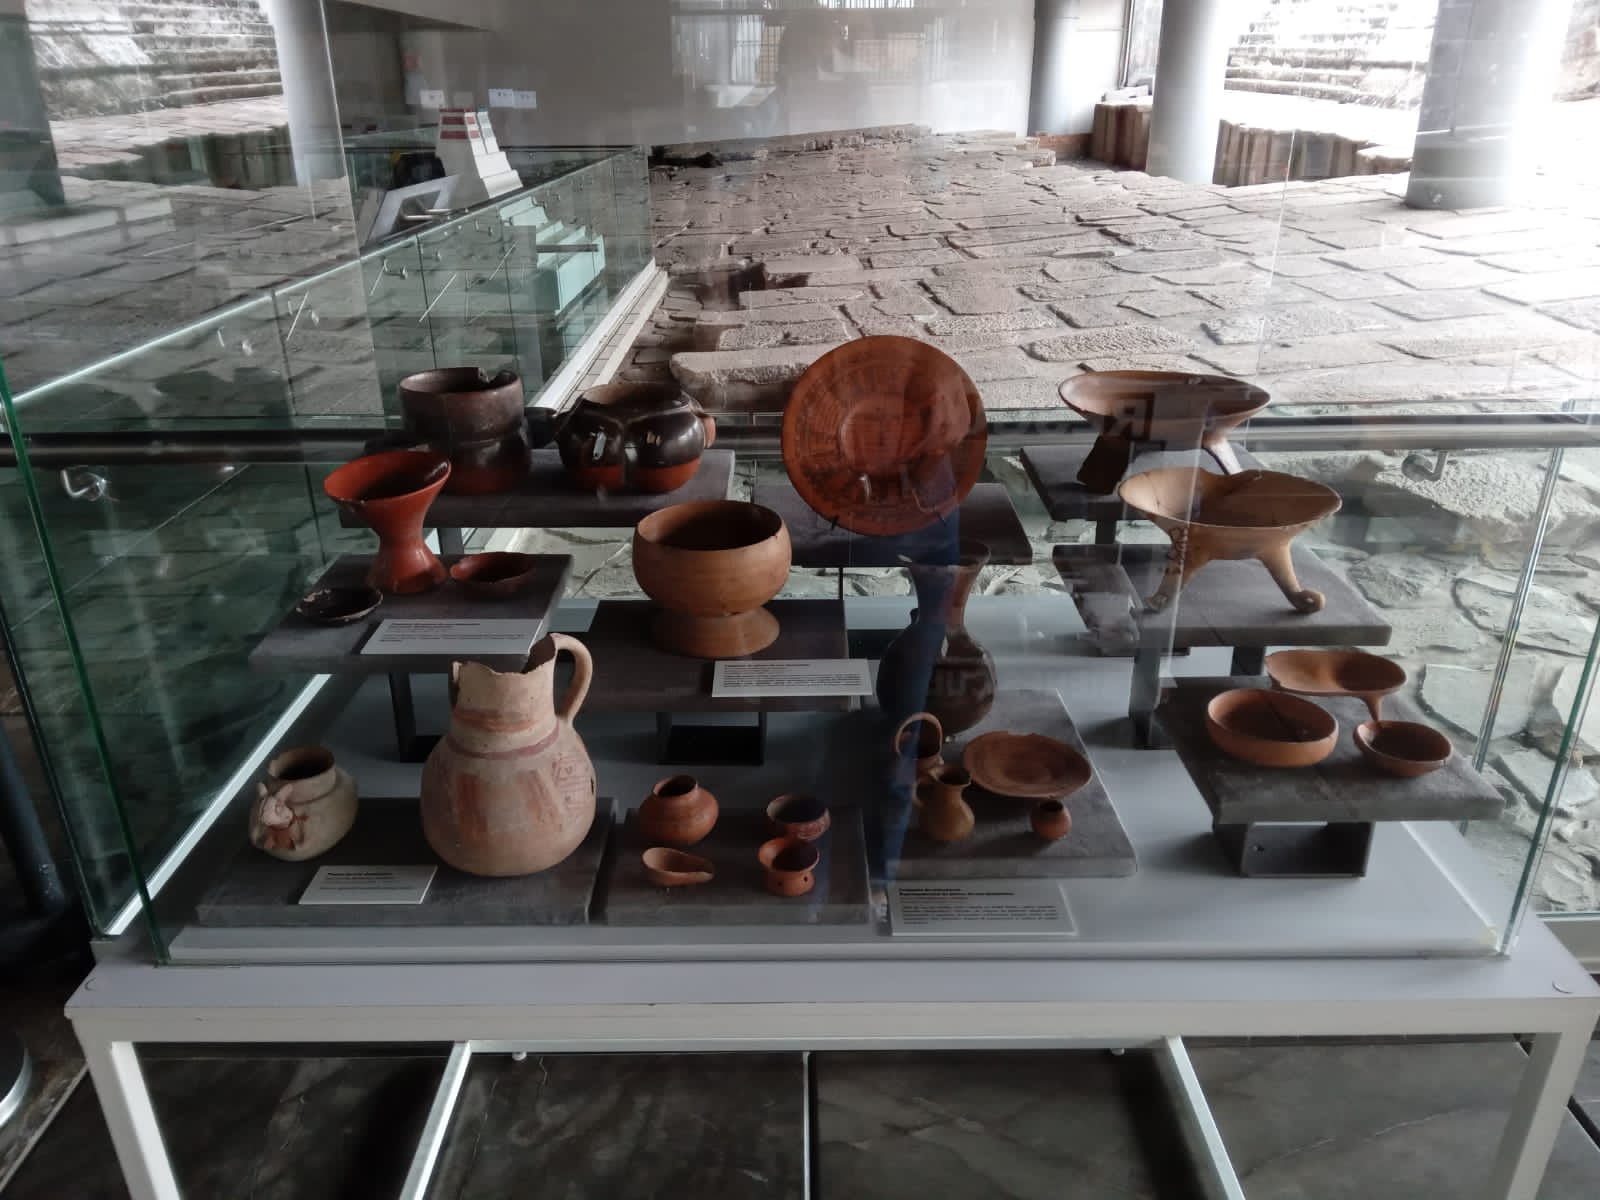 2,000 piezas arqueológicas, fueron entregadas por una familia radicada en Barcelona, España y llegaron a territorio mexicano, el pasado mes de julio.
(Foto: especial)